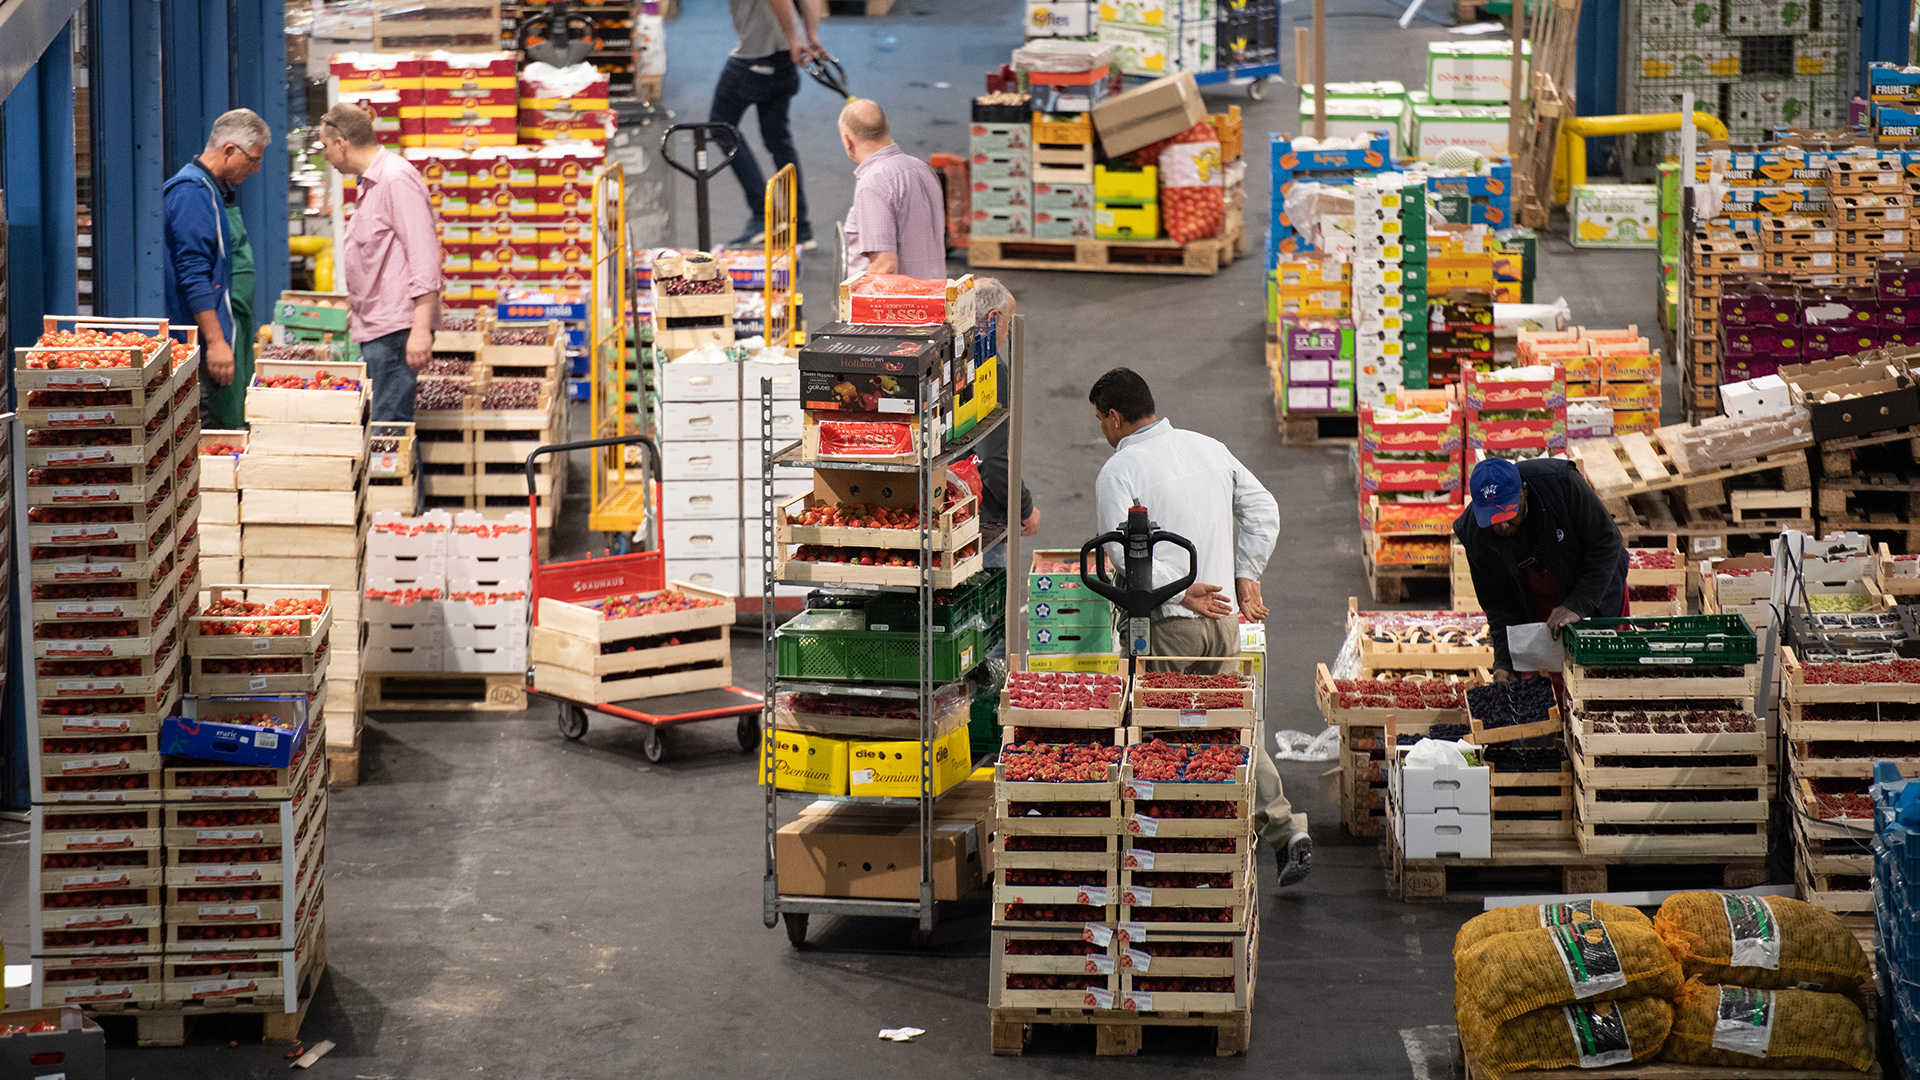 Im Hamburger Großmarkt werden viele Obst- und Gemüsekisten von Menschen bewegt. | picture alliance/dpa